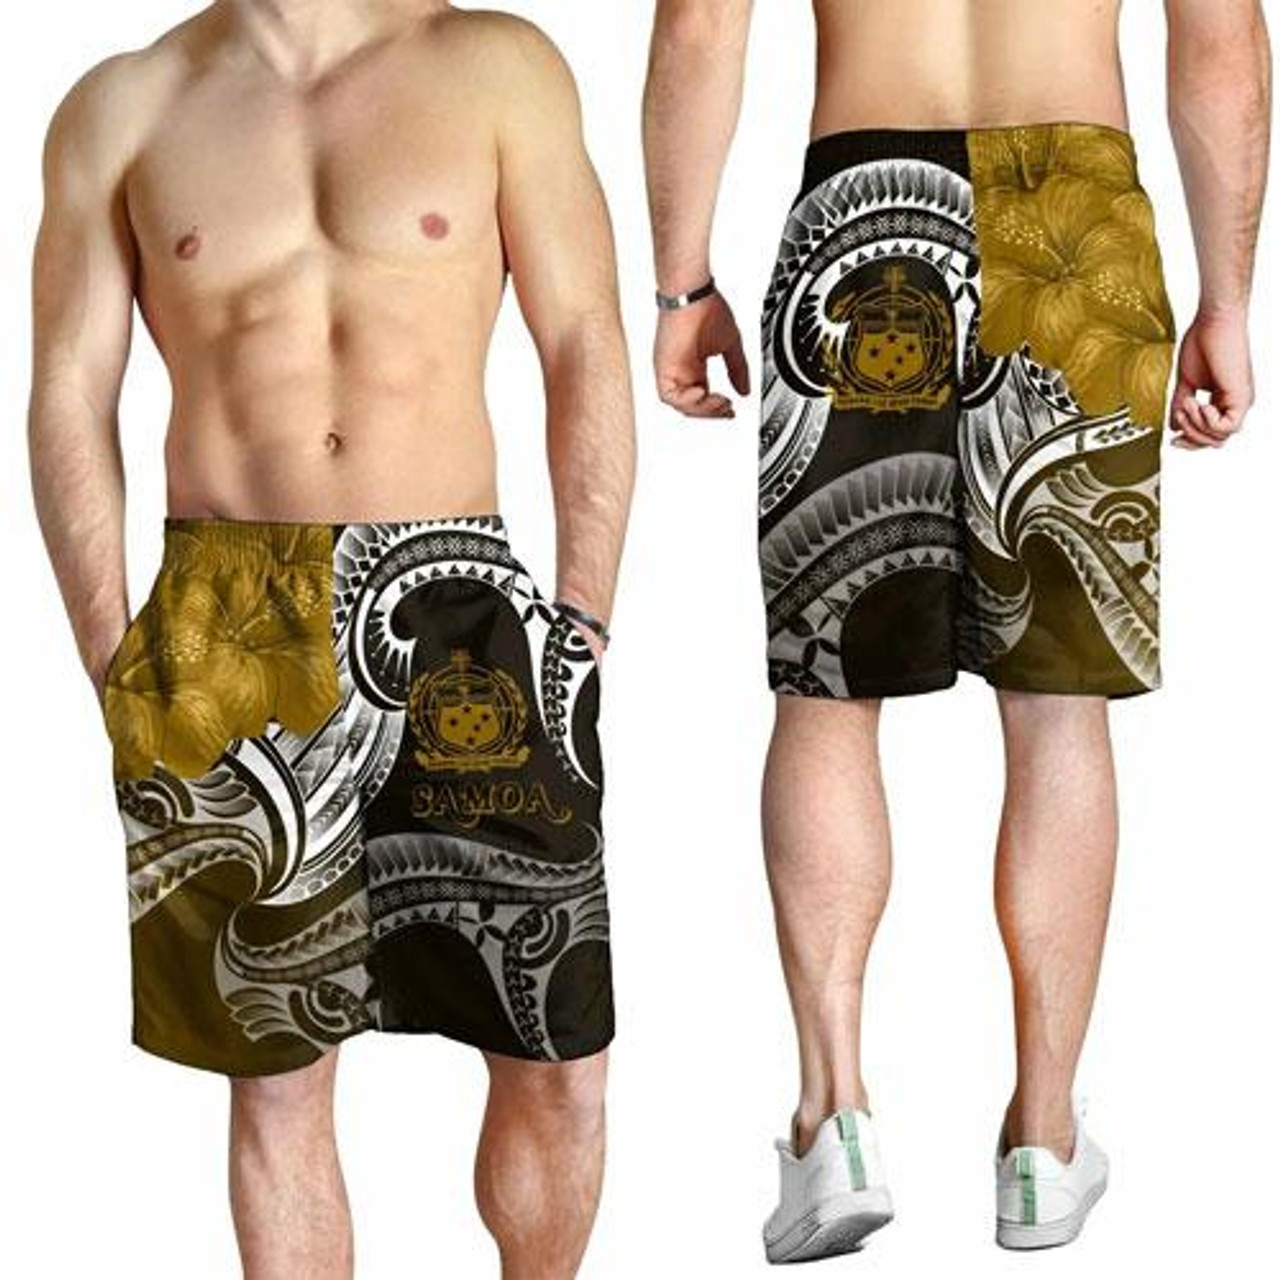 Samoa Men Shorts - Samoa Seal Wave Style (Gold) 2